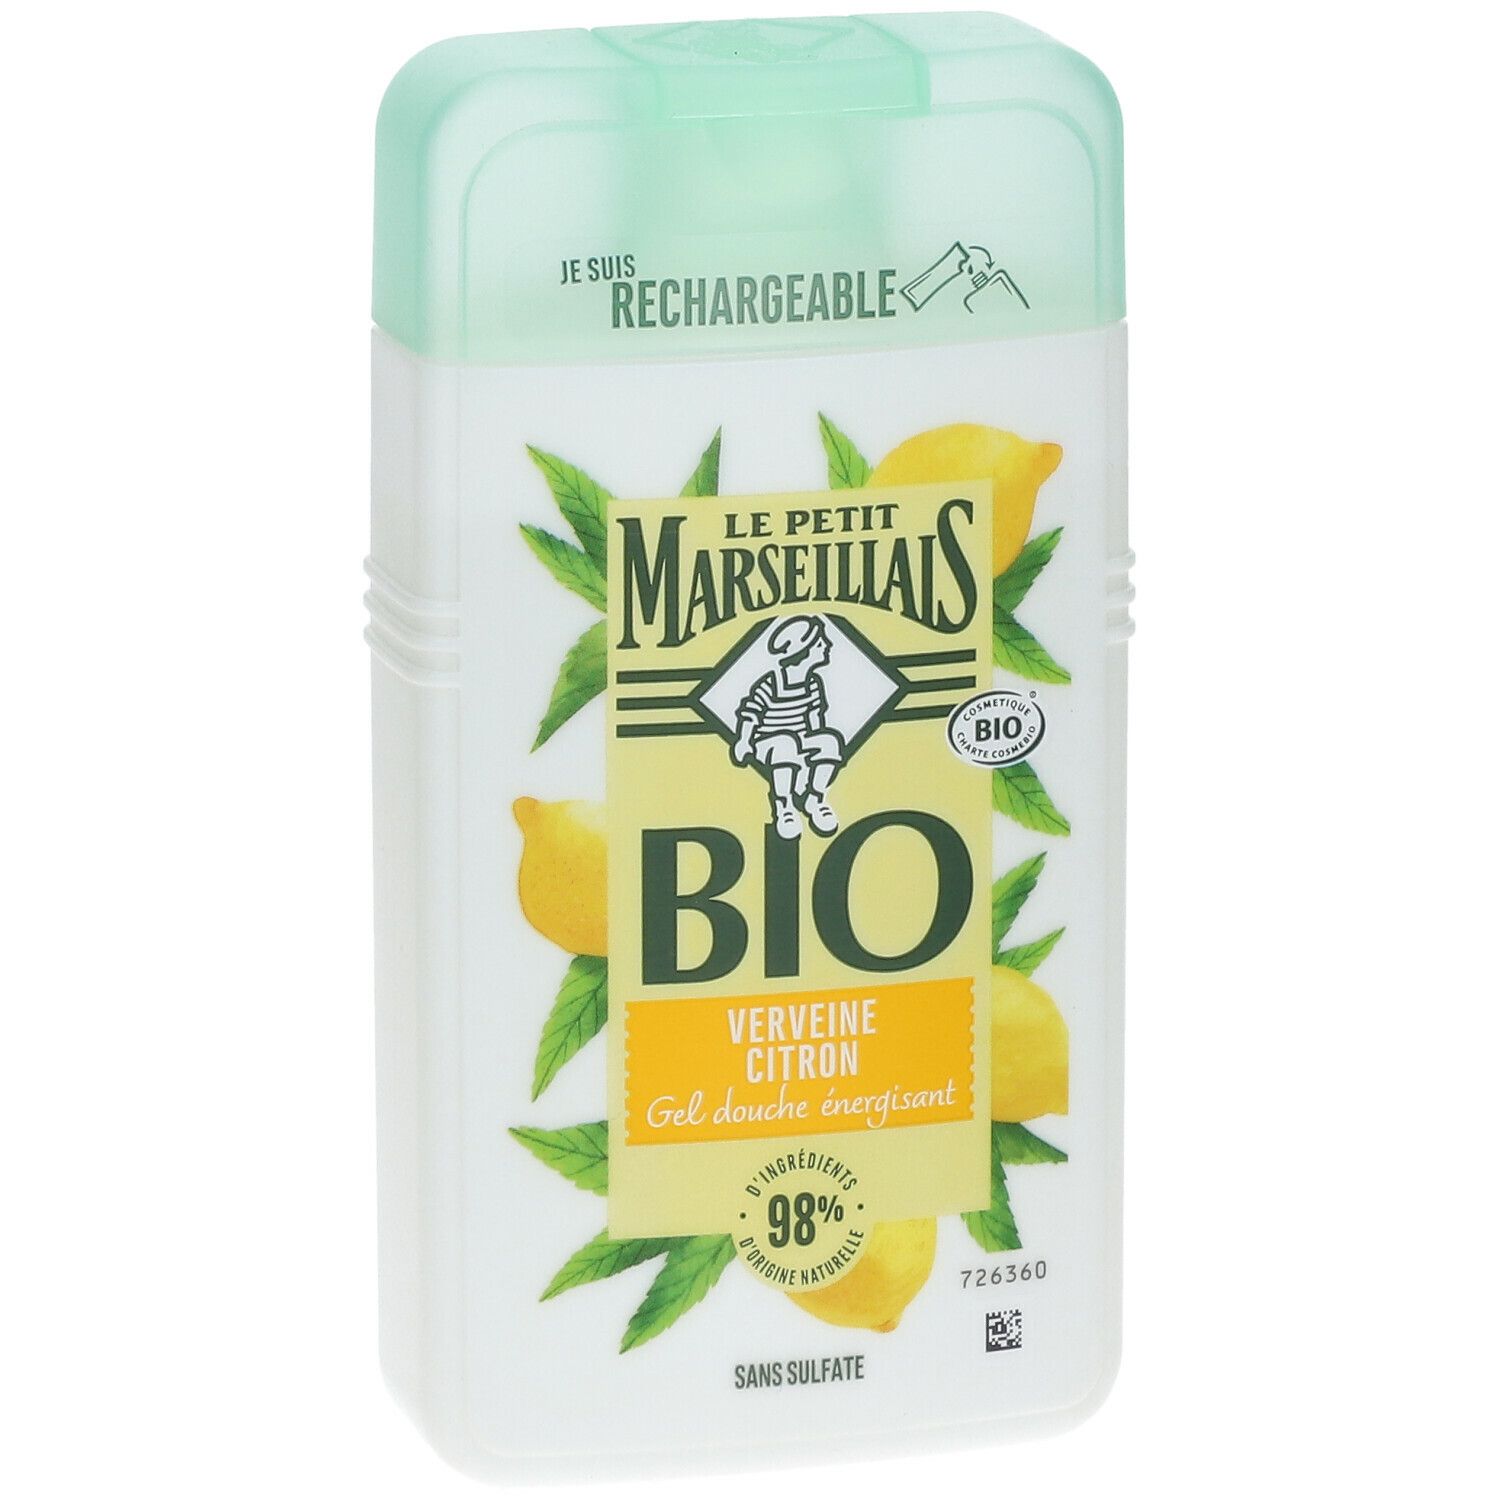 Le Petit Marseillais Gel Douche Bio Energisant, au pH neutre, Verveine Citron, 250ml